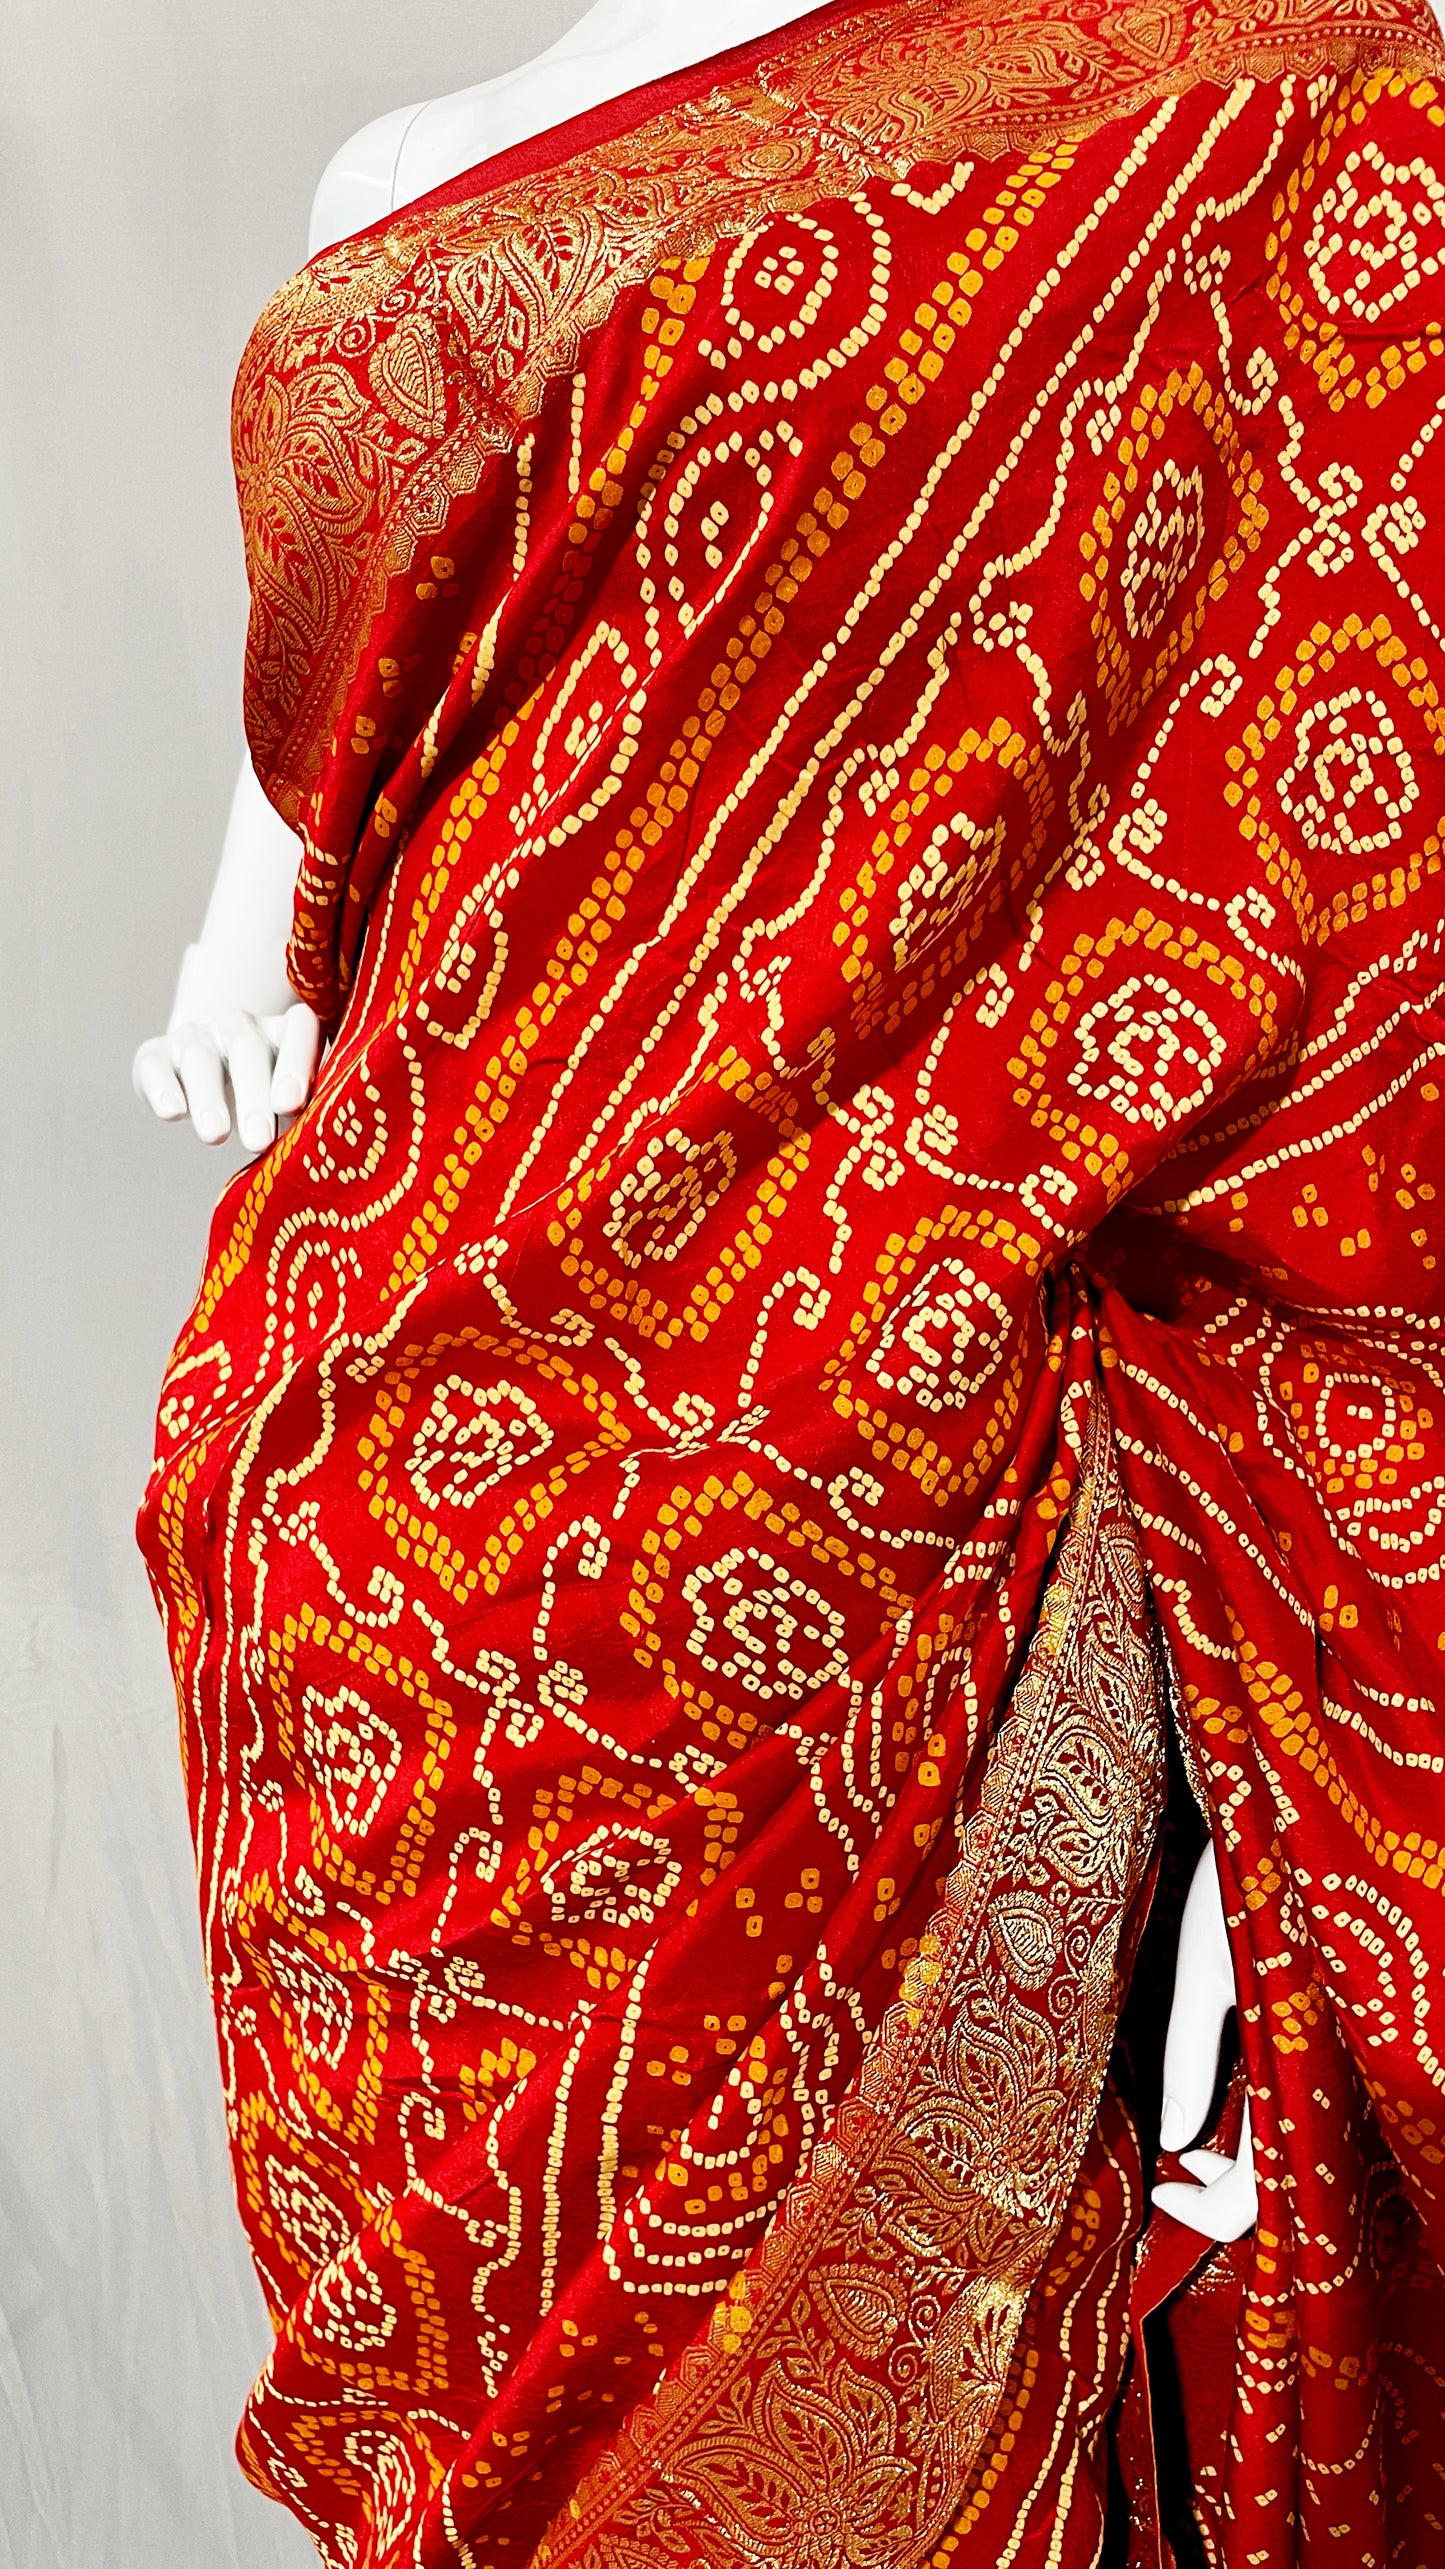 Red Orange Bandhani Sari, Bhandej Silk Saree, Jaipuri print Saree